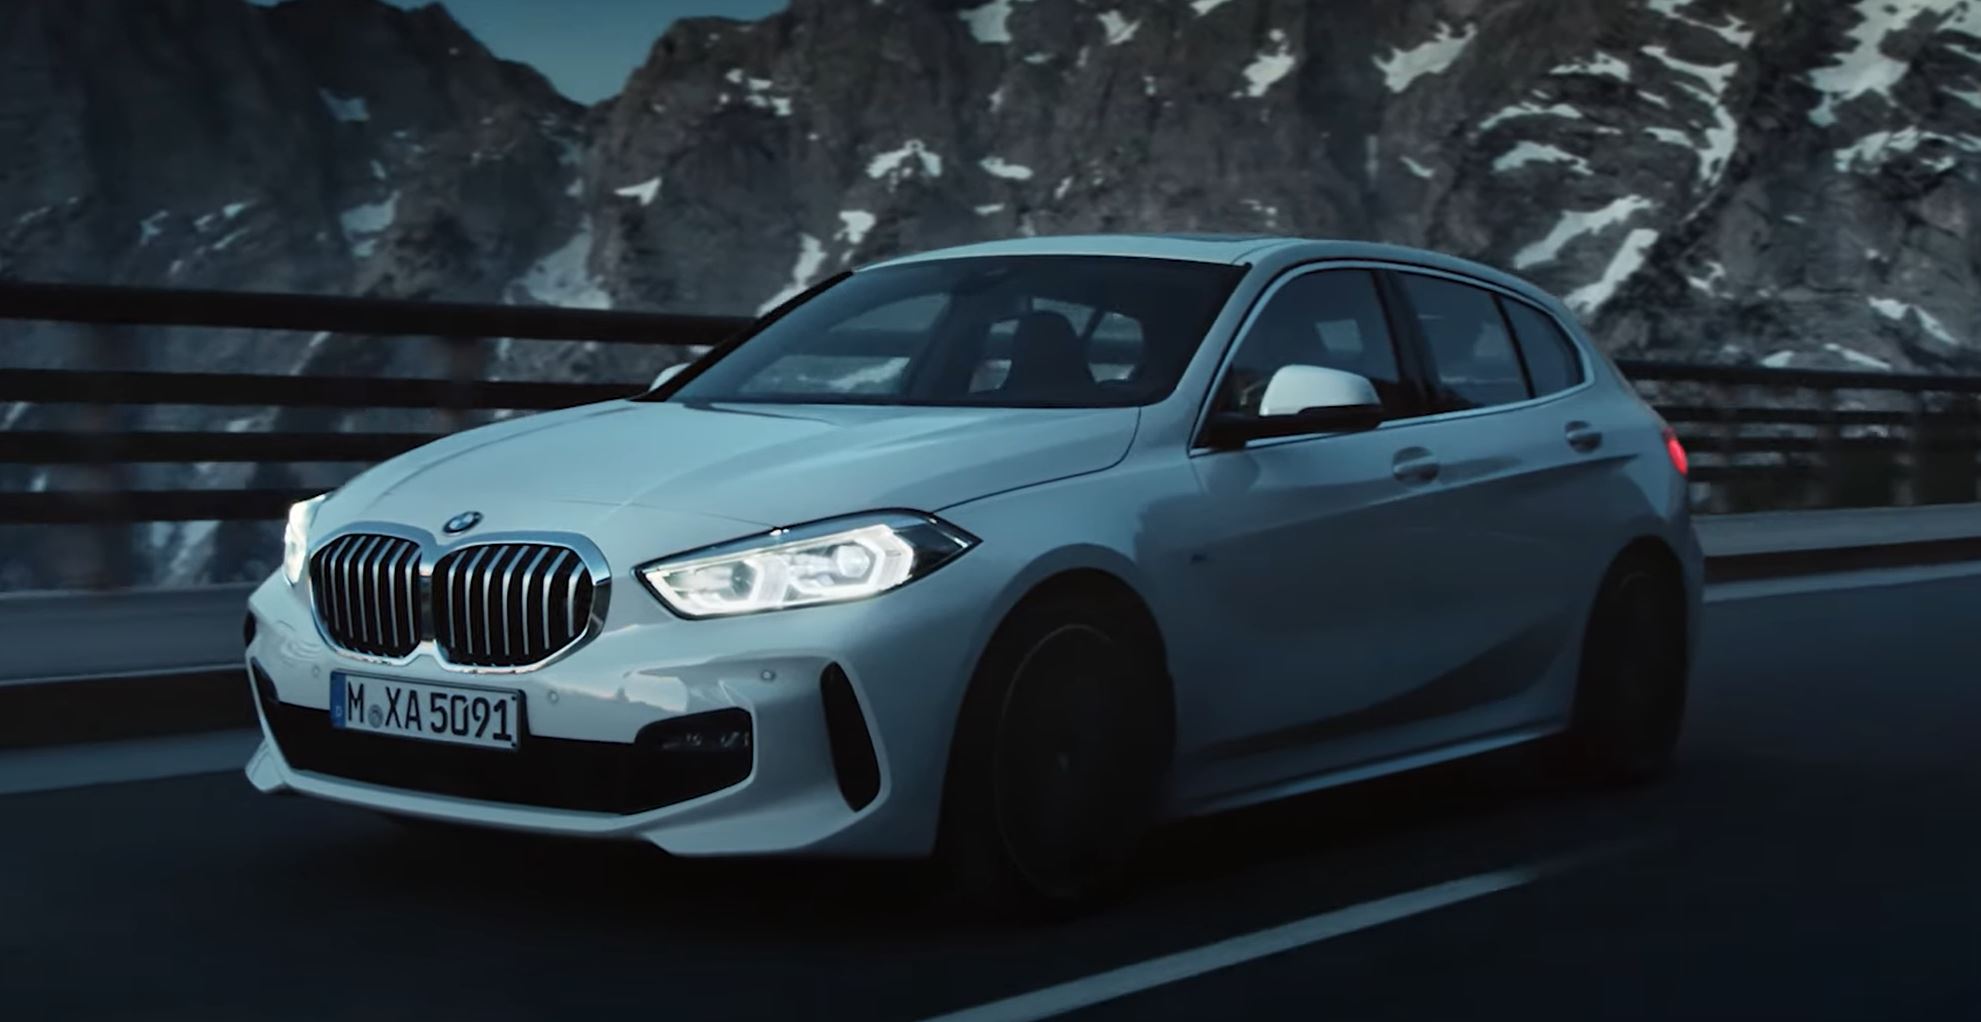 BMW active les microtransactions : le siège chauffant payant par abonnement devient une réalité